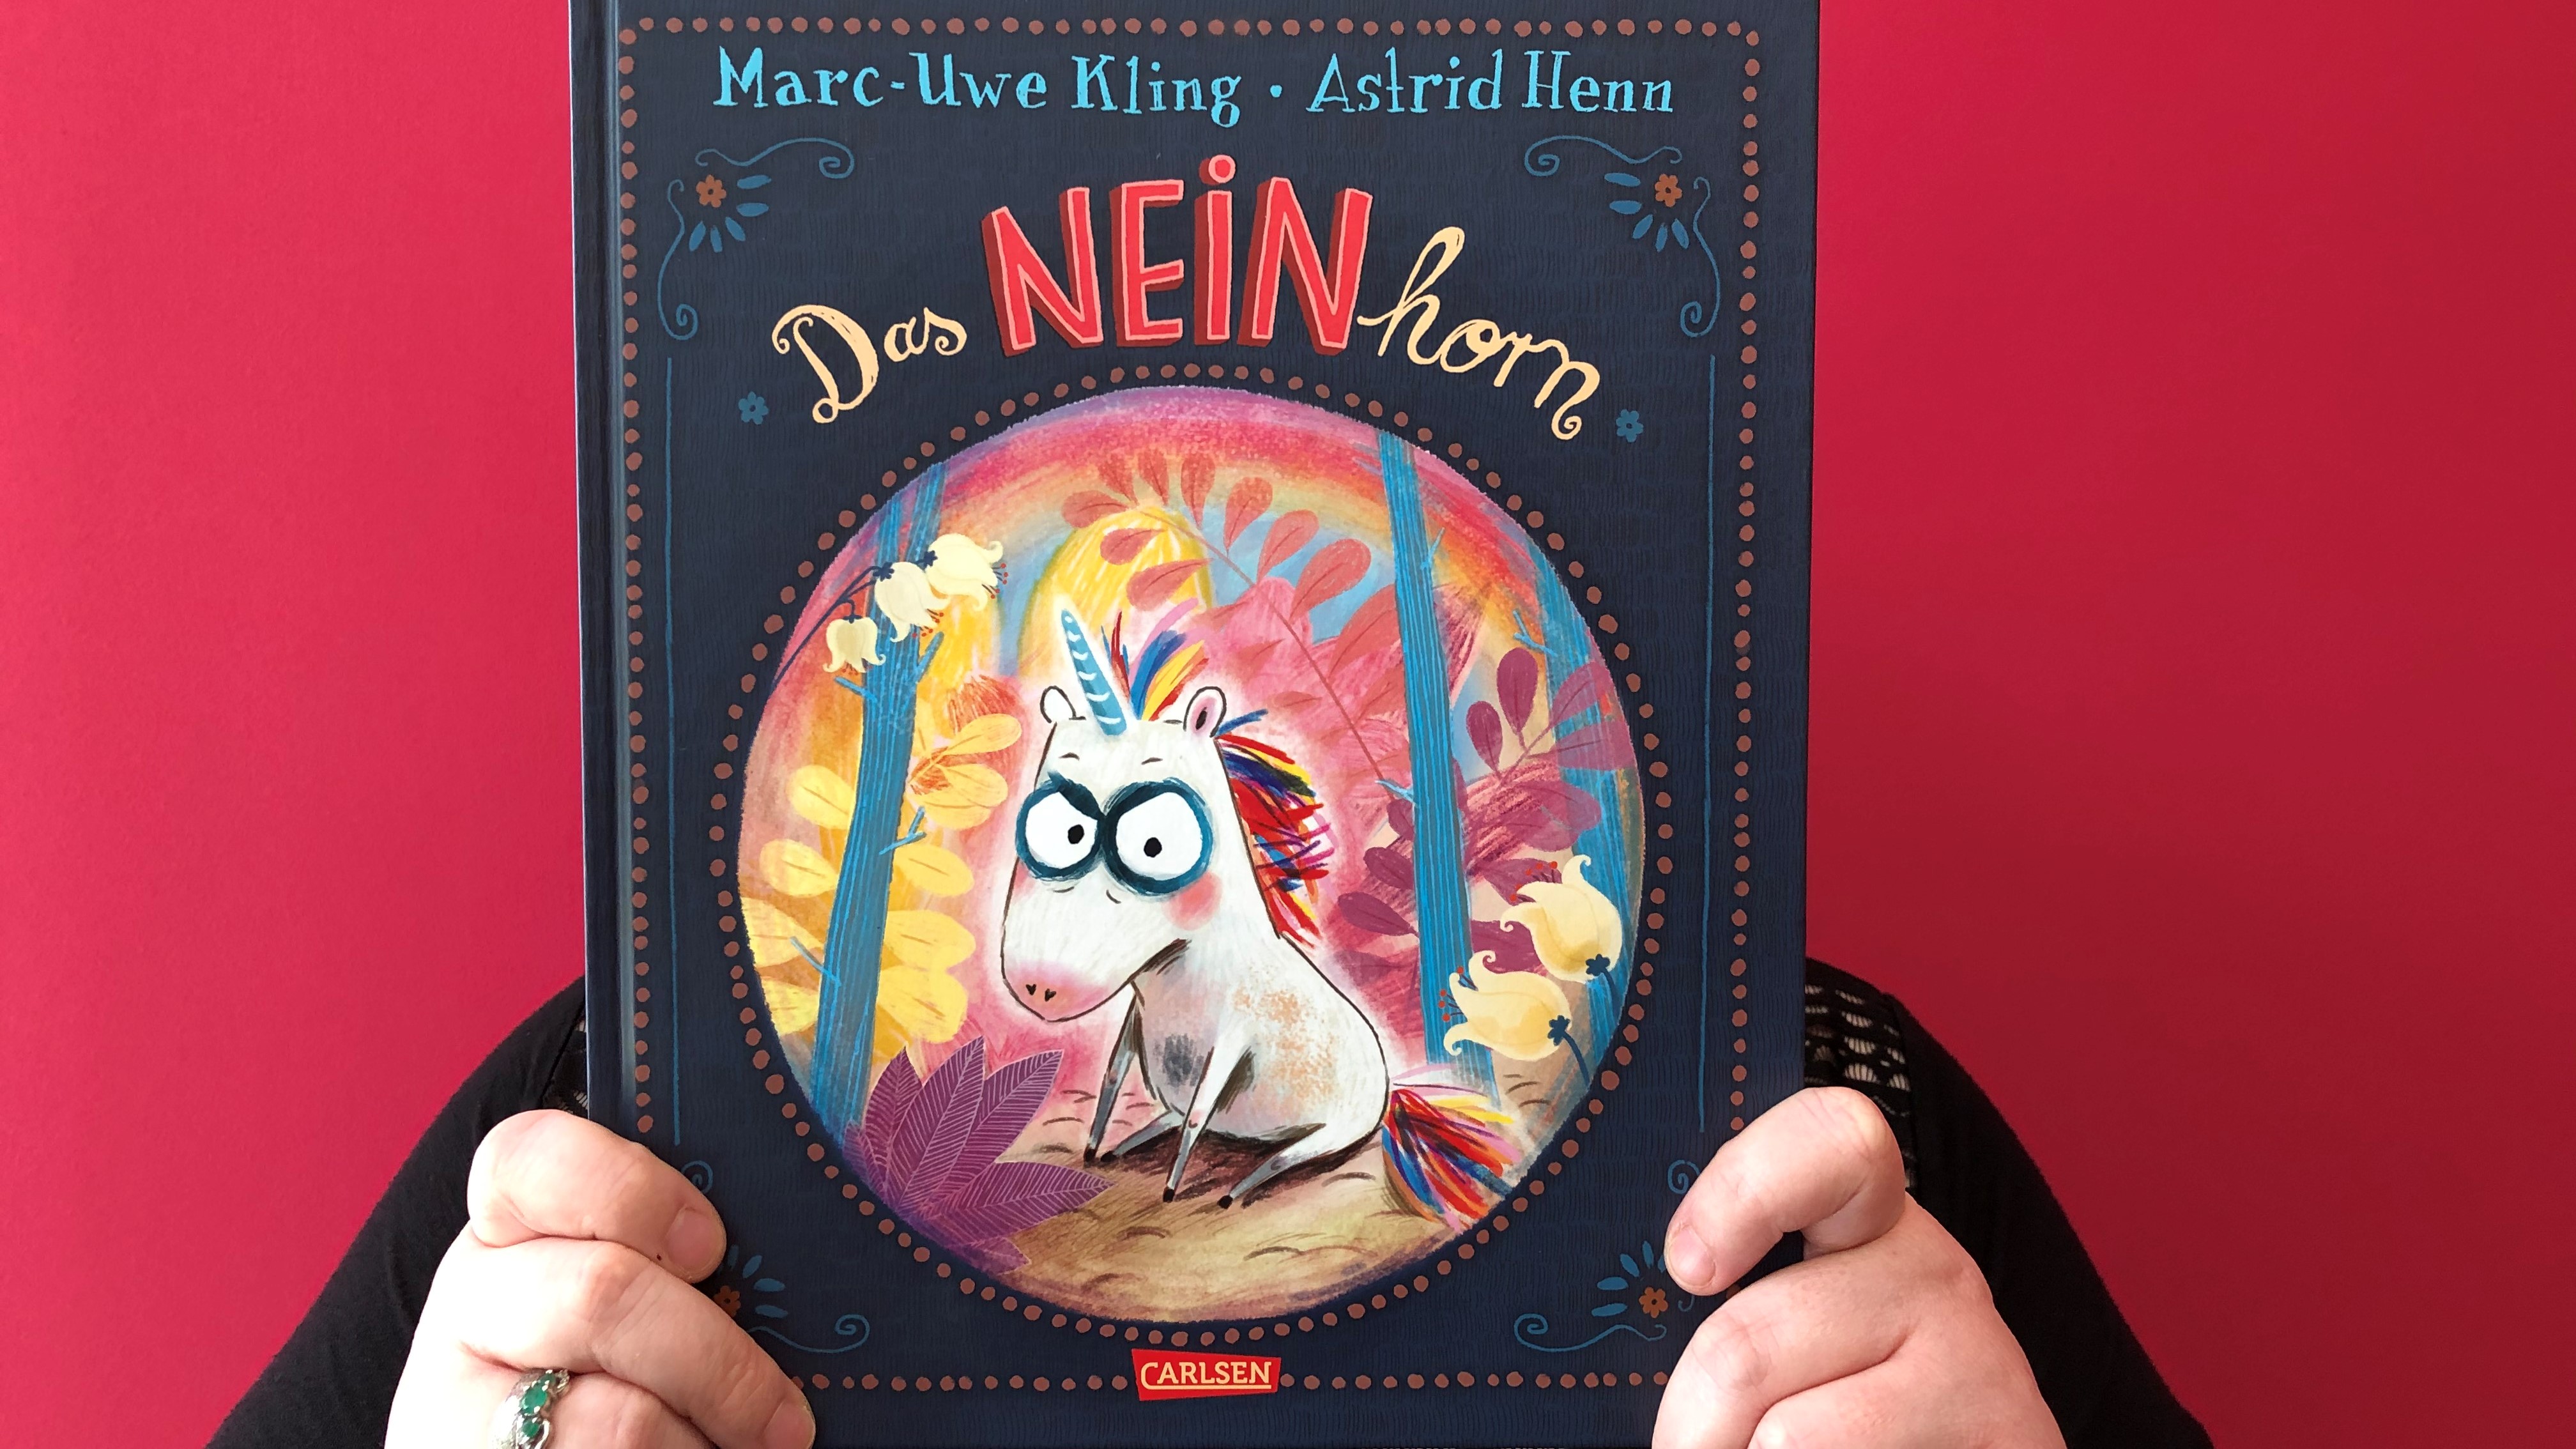 Buchcover "Das Neinhorn" von Marc-Uwe Kling